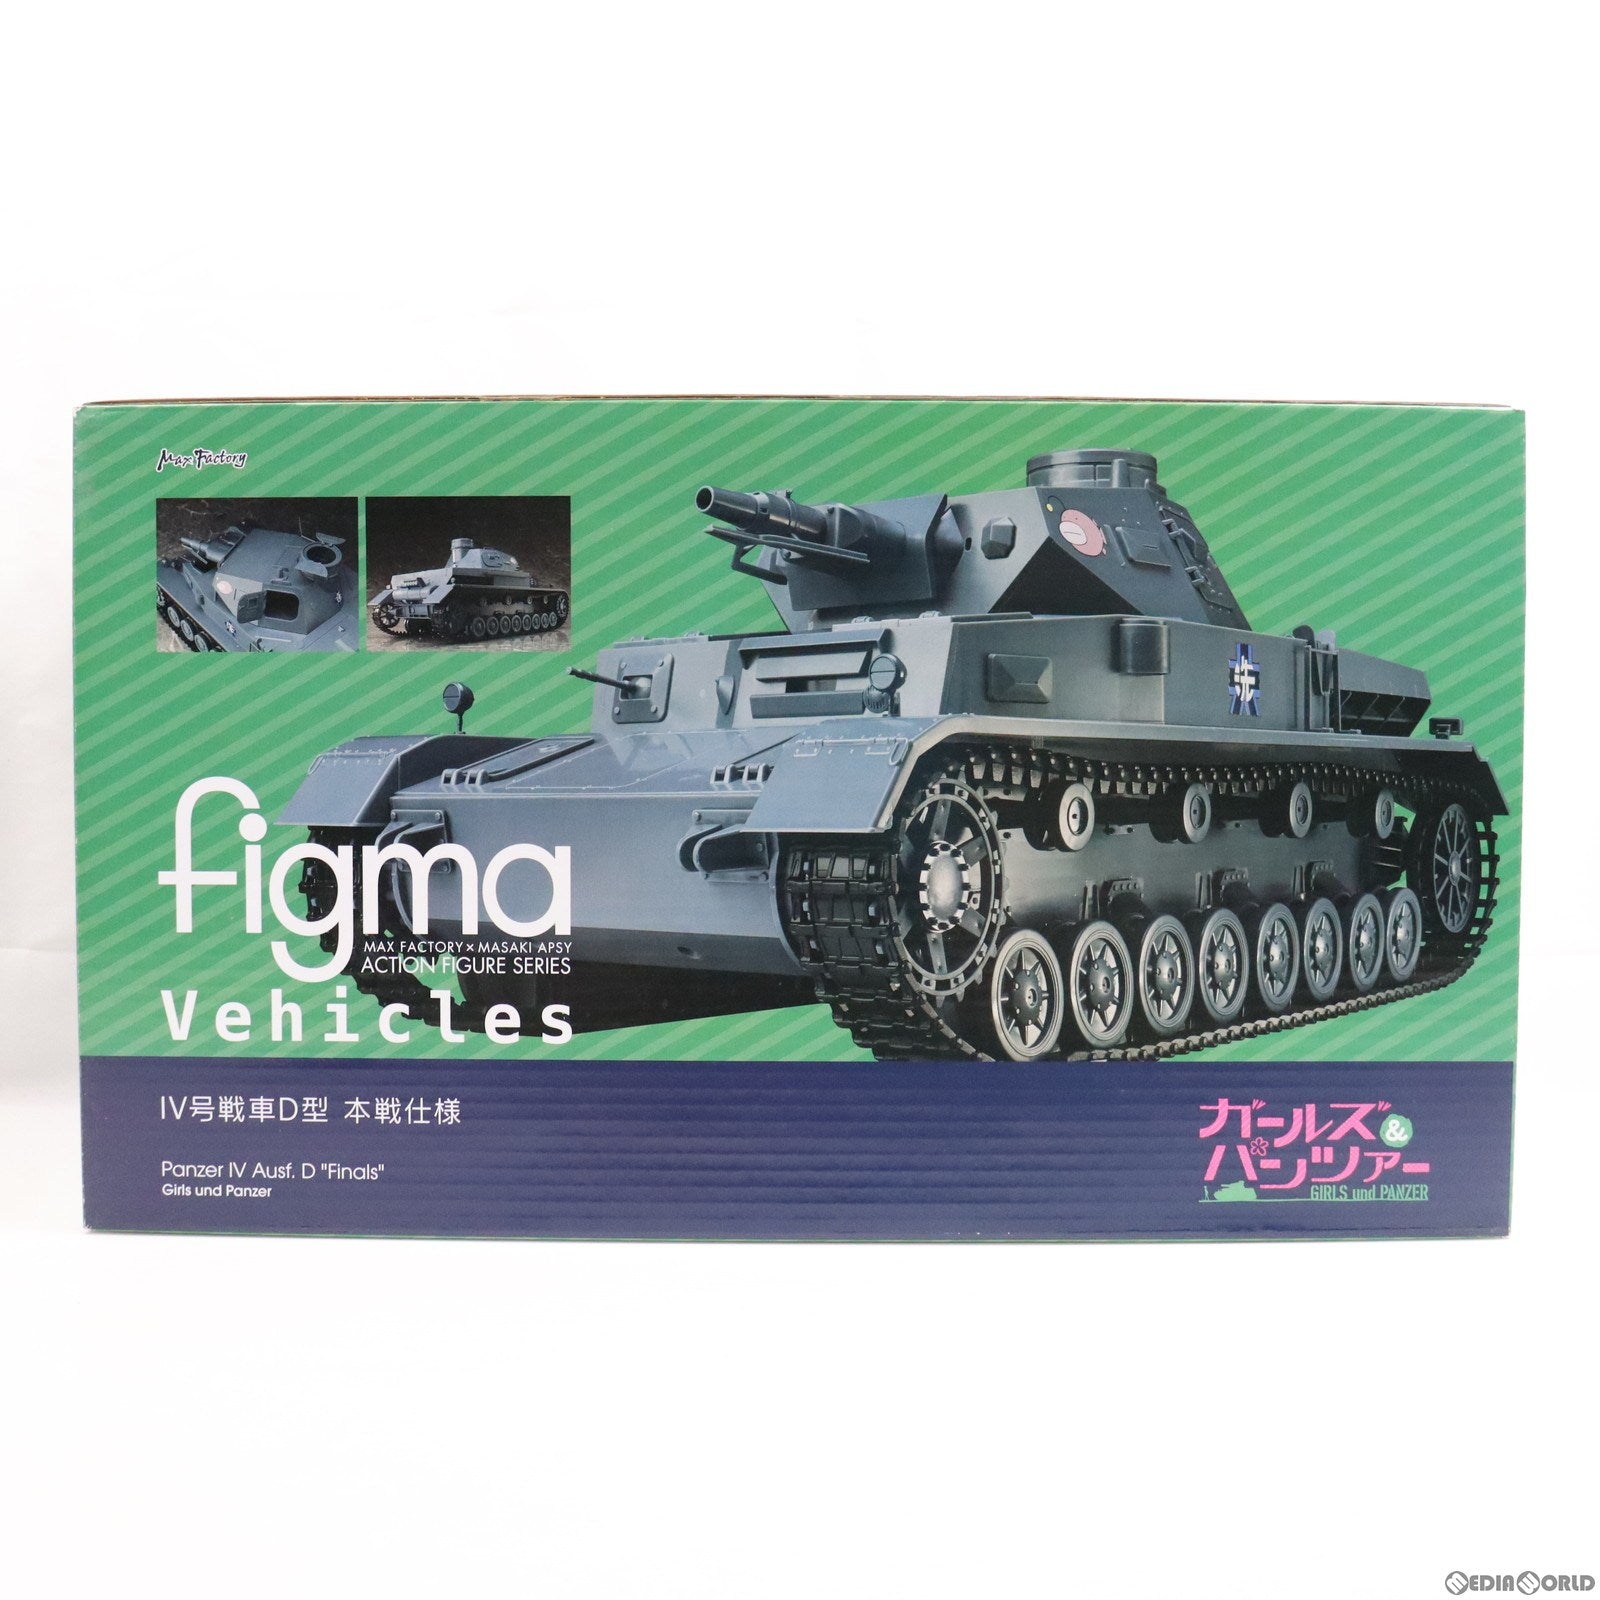 【中古即納】[FIG]figma Vehicles(フィグマ ビークルズ) IV号戦車D型 本戦仕様 ガールズ&パンツァー 1/12 完成品 可動フィギュア マックスファクトリー(20151031)